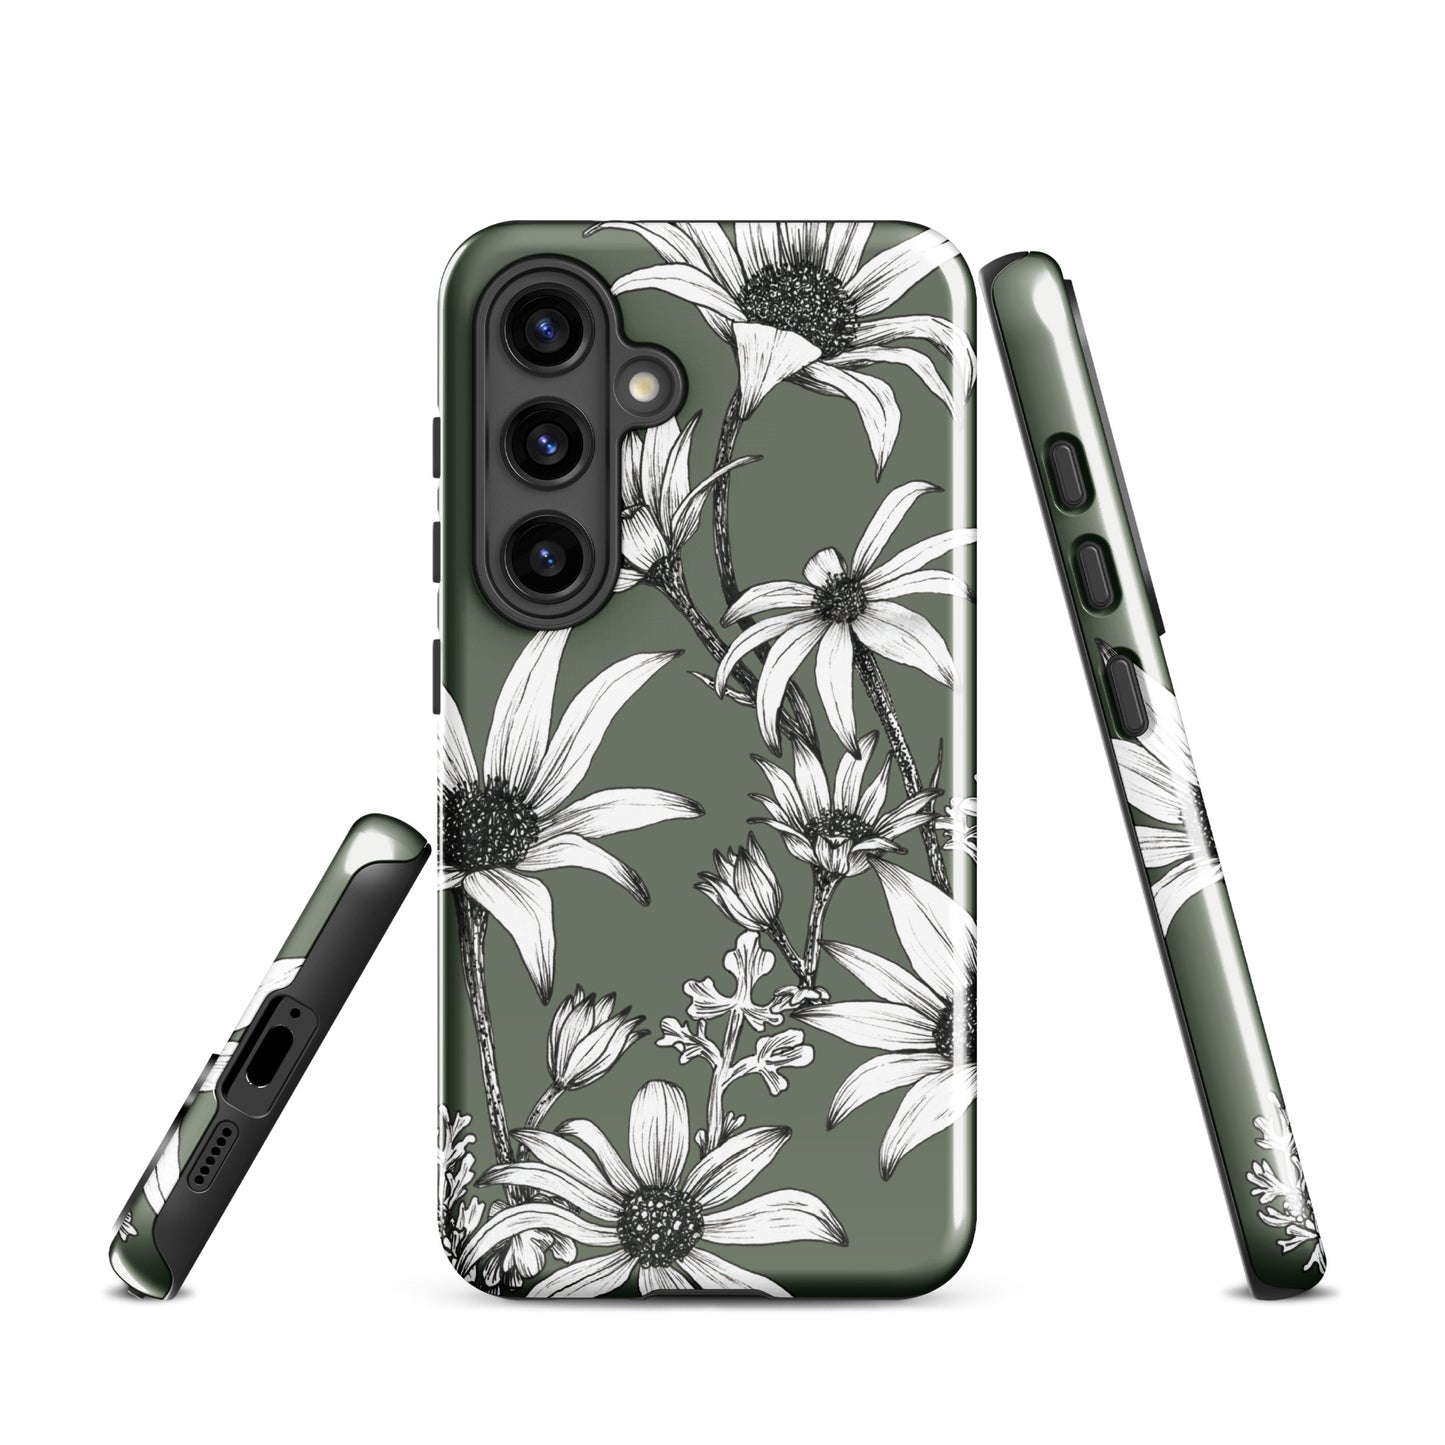 Tough case for Samsung® S10 - S24 Flannel Flower Dark Sage